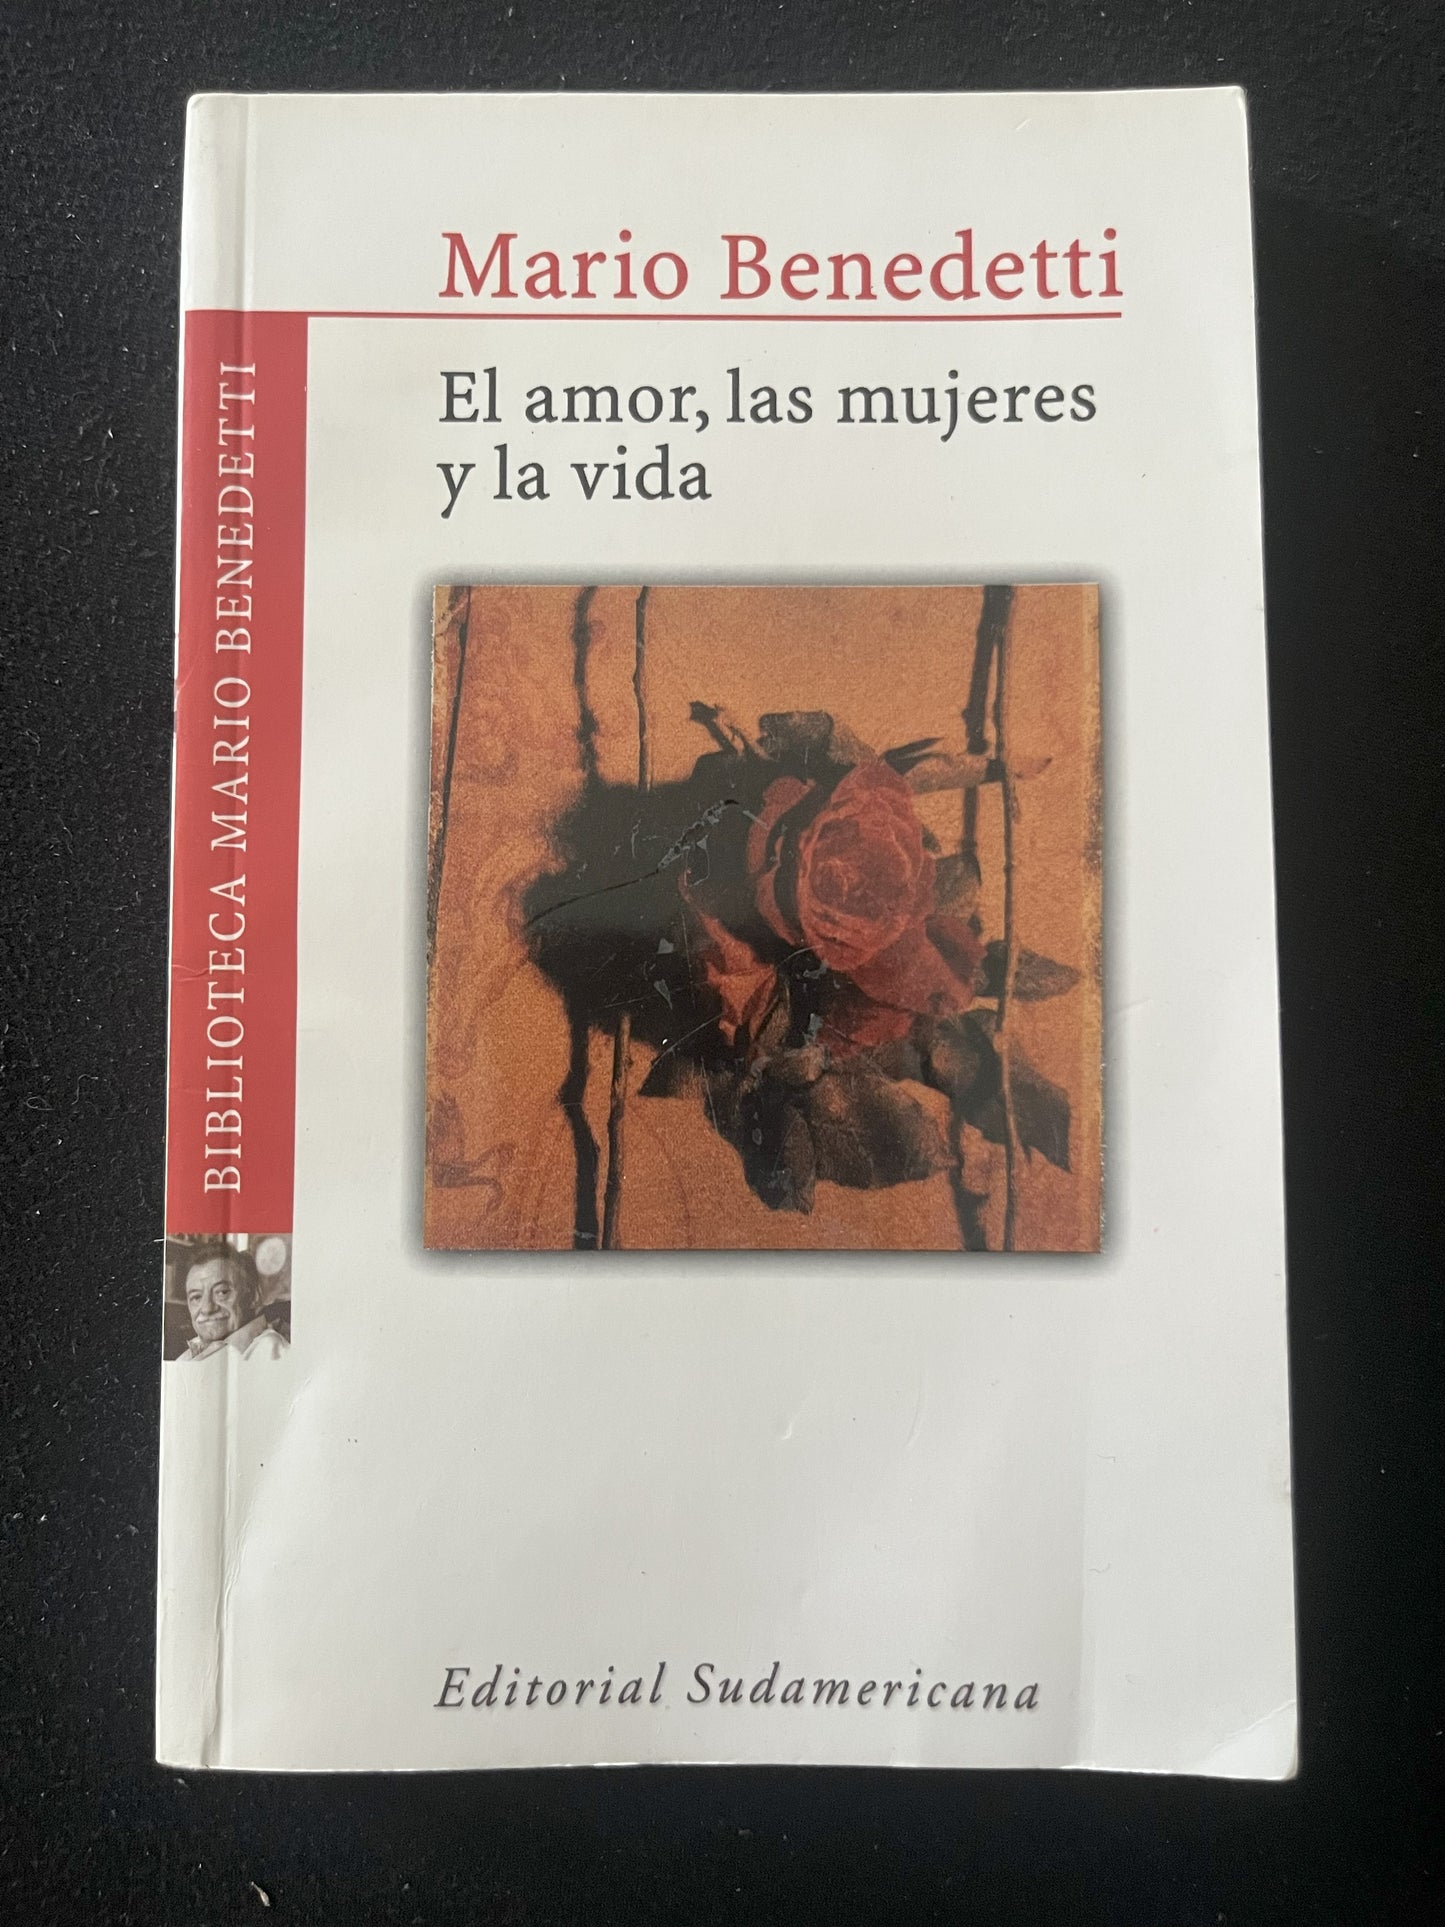 El Amor, Las Mujeres, y La Vida de Mario Benedetti